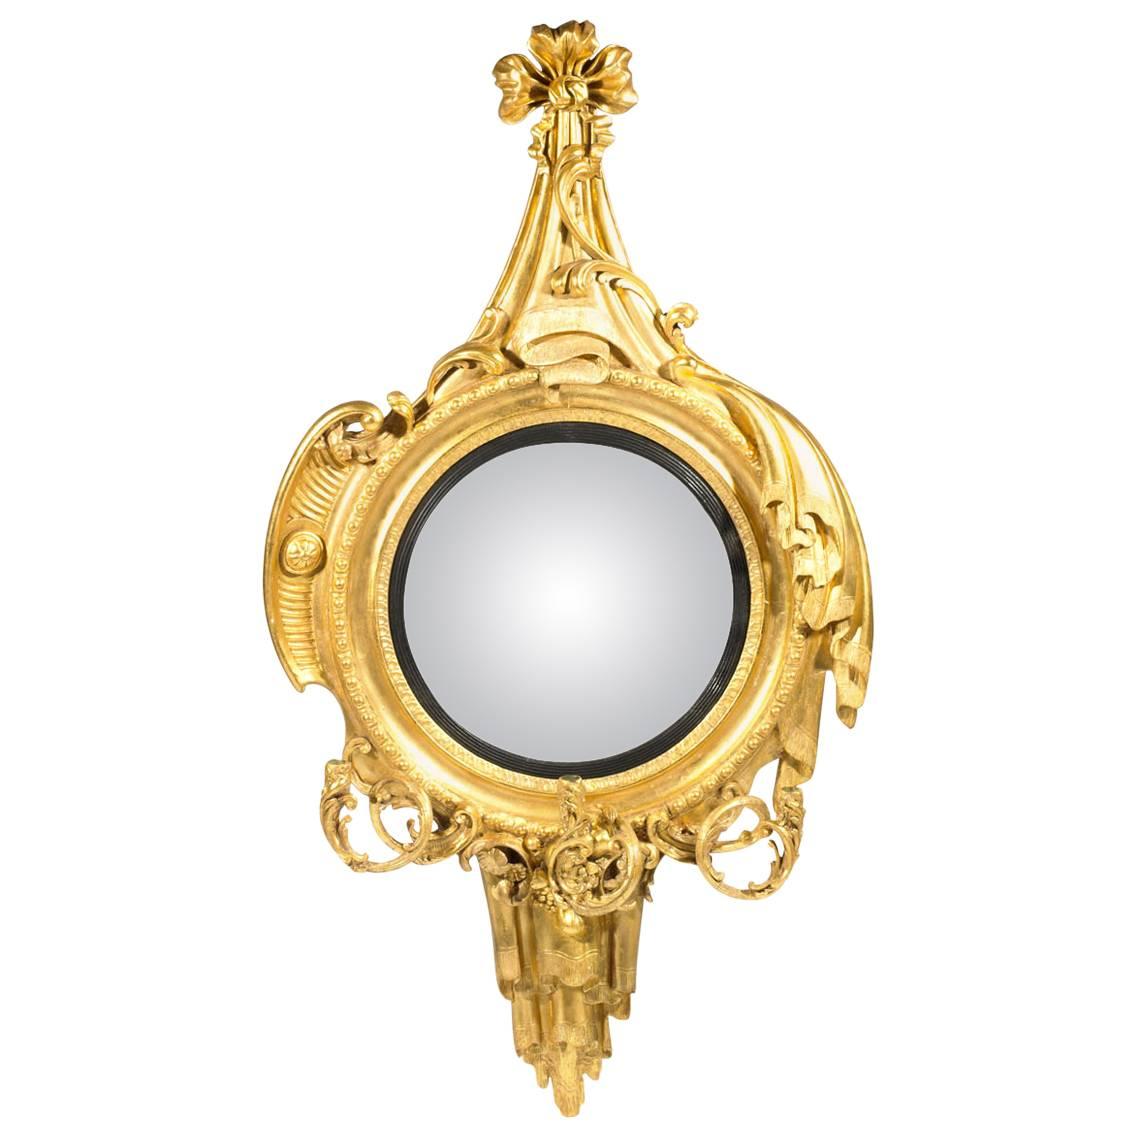 Vergoldeter konvexer Spiegel aus dem 19. Jahrhundert